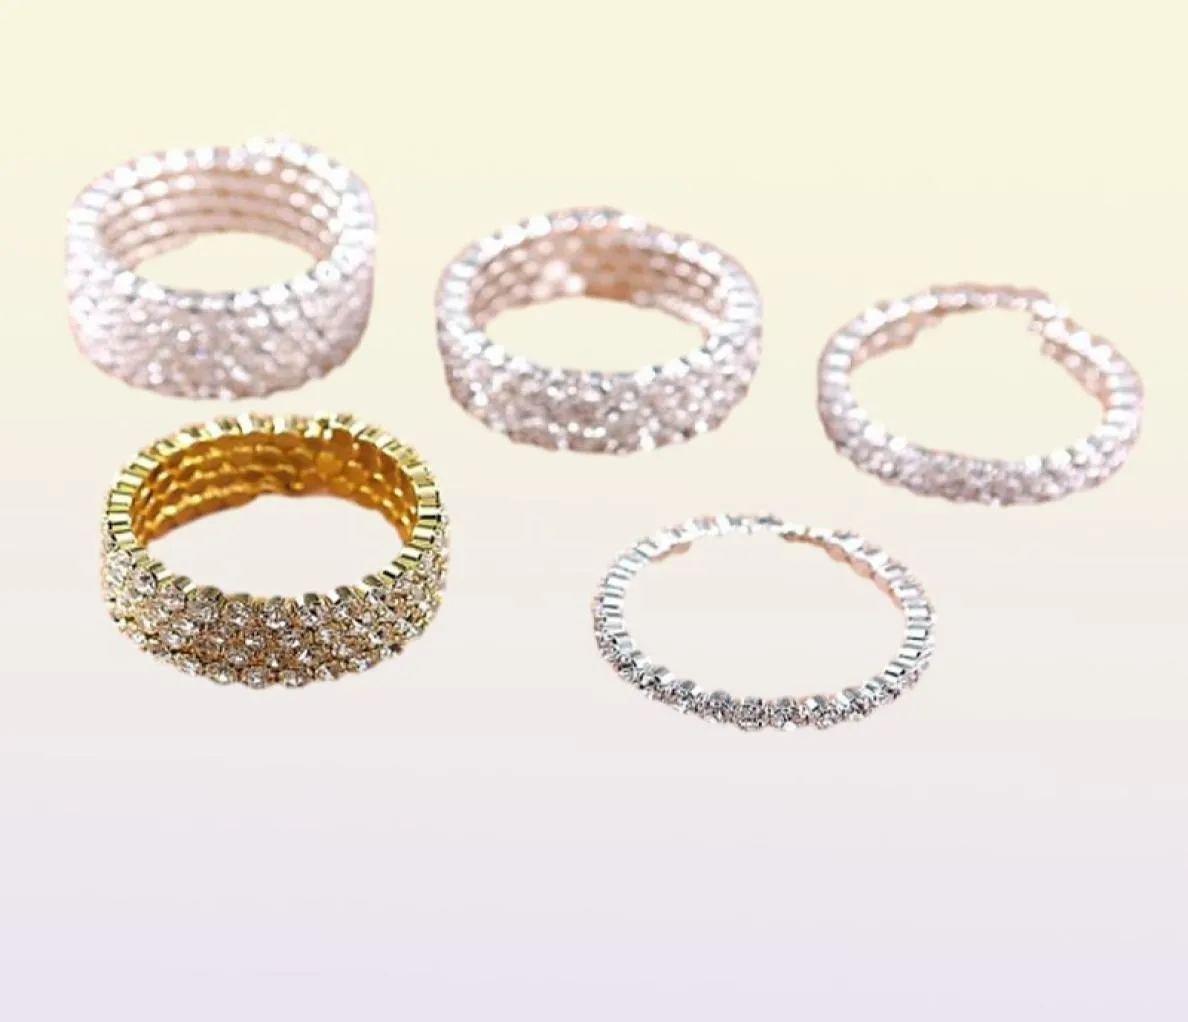 Hohe Qualität 15 Reihen Braut Hochzeit Spirale Armreif Großen Kristall Strass Stretch-Armband Schmuck Zubehör f1126001